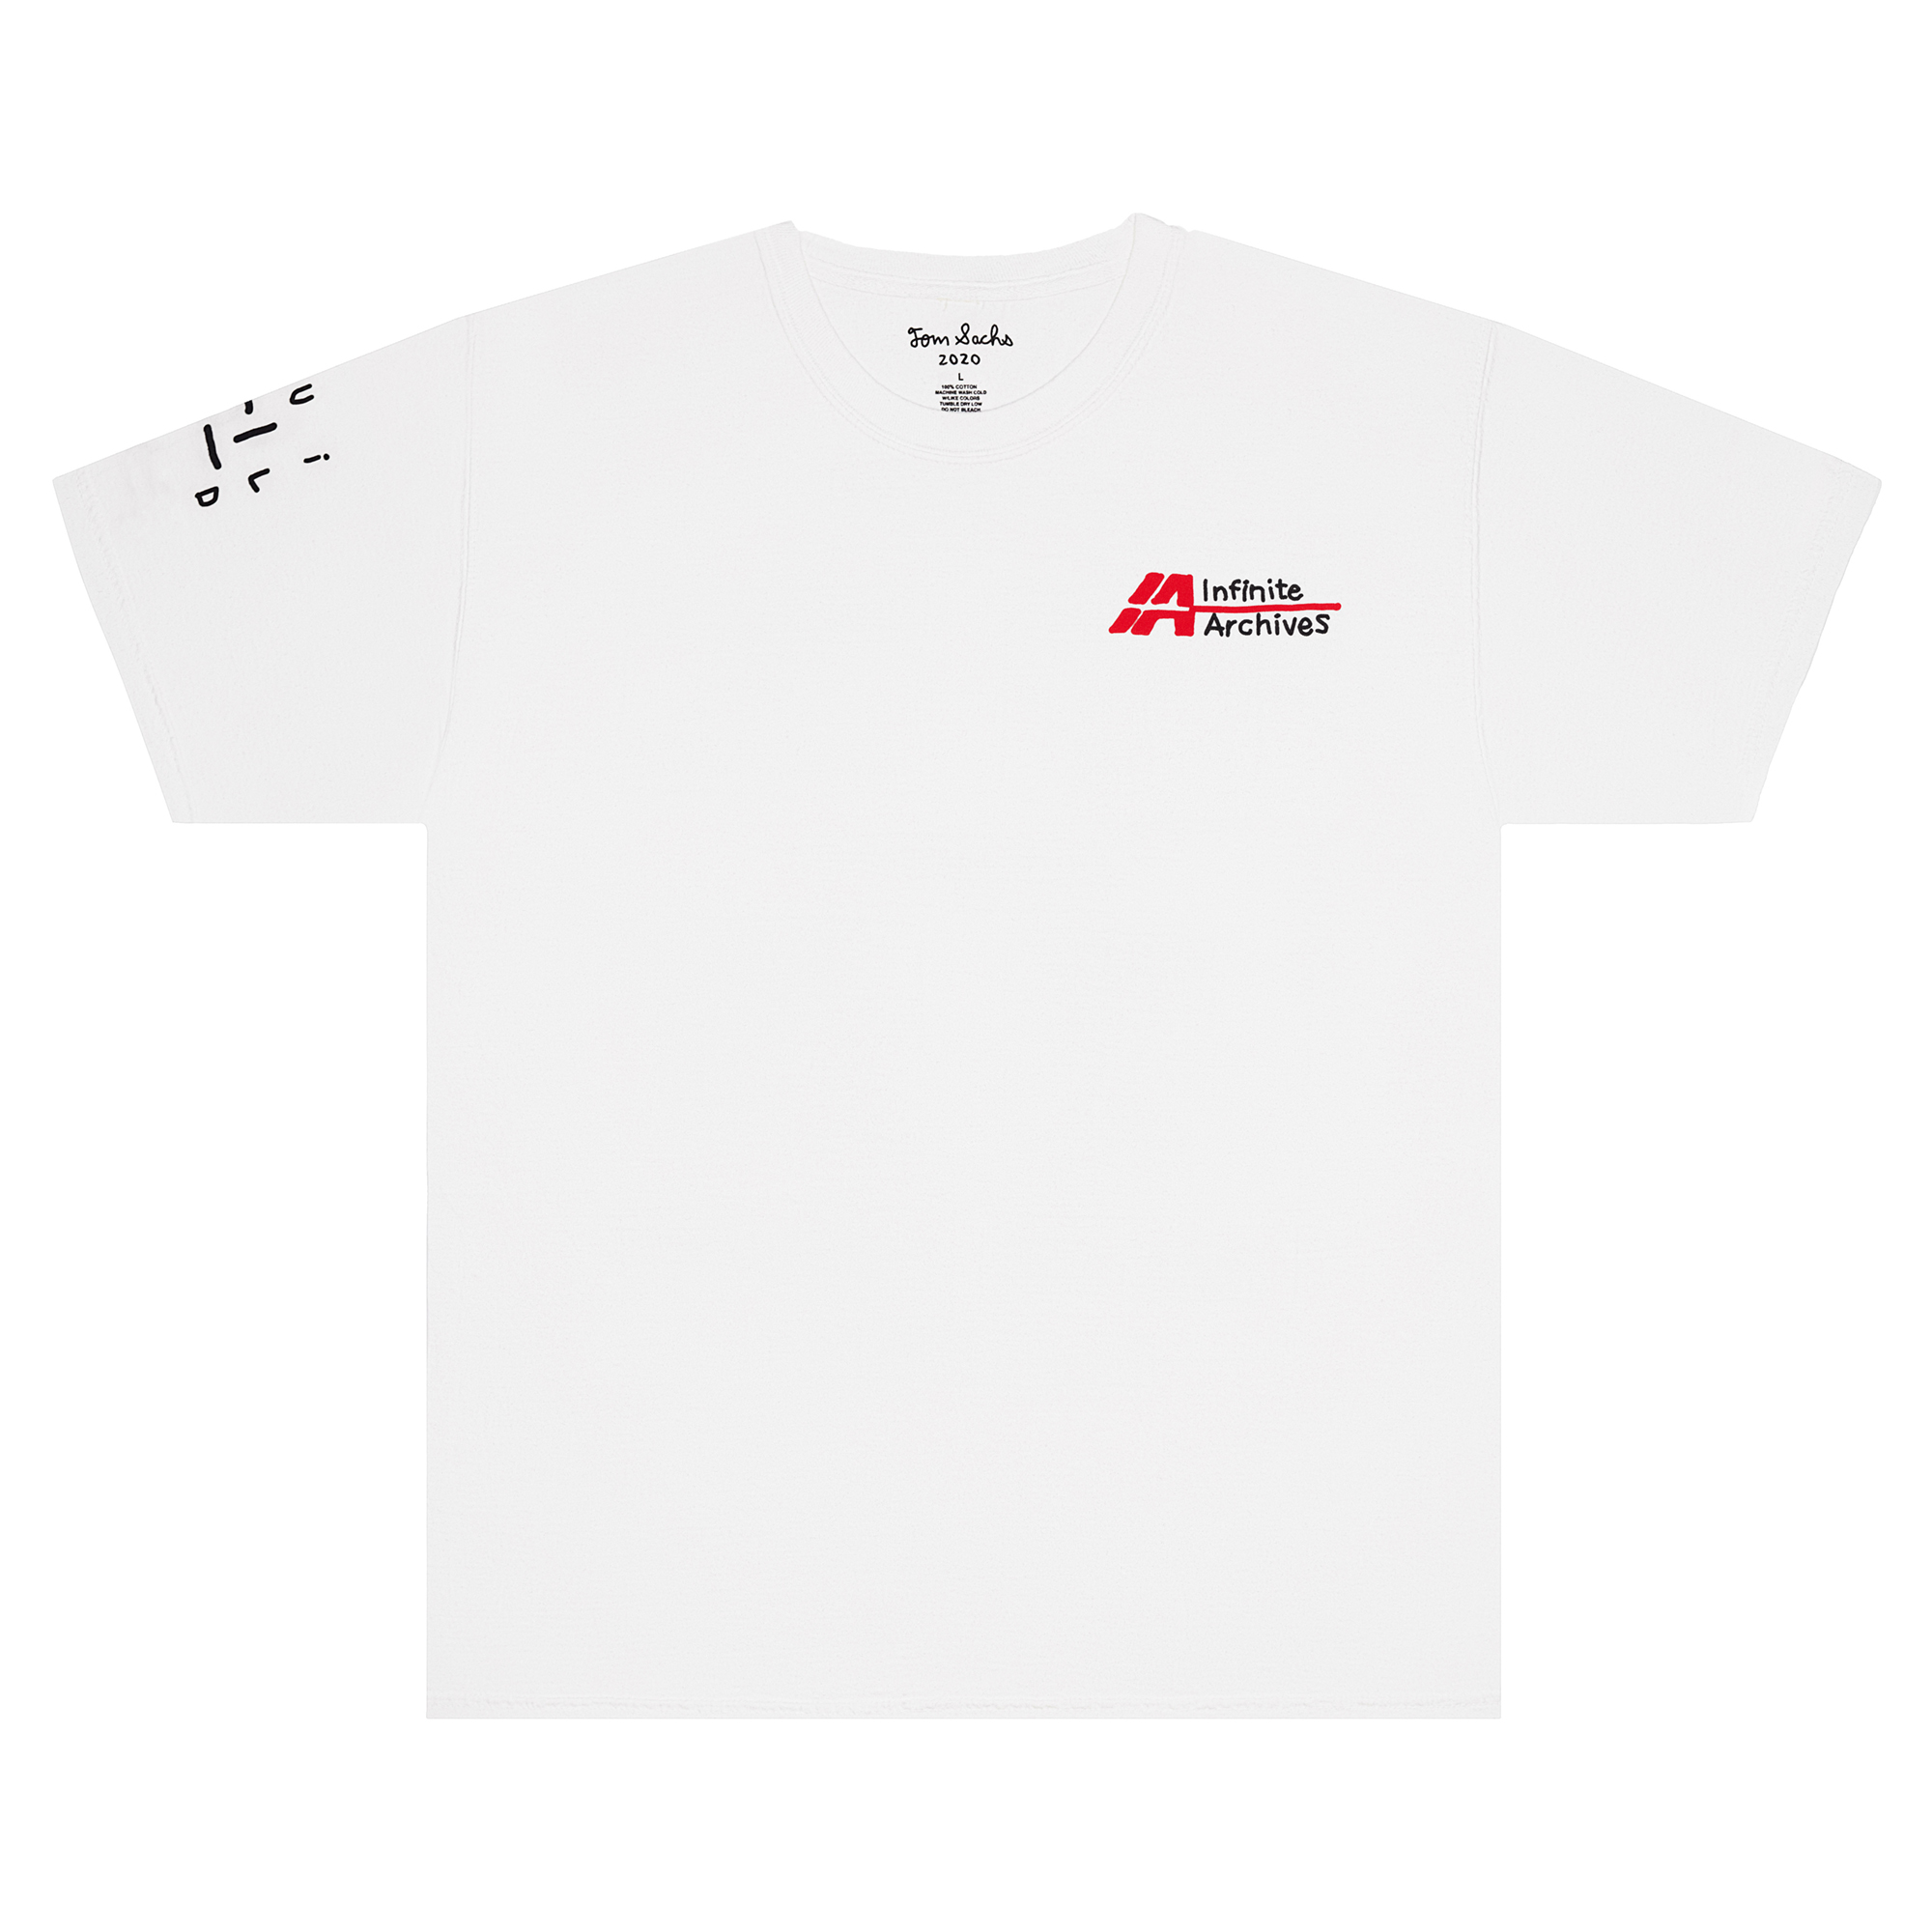 Infinite Archives x Tom Sachs T-Shirt White